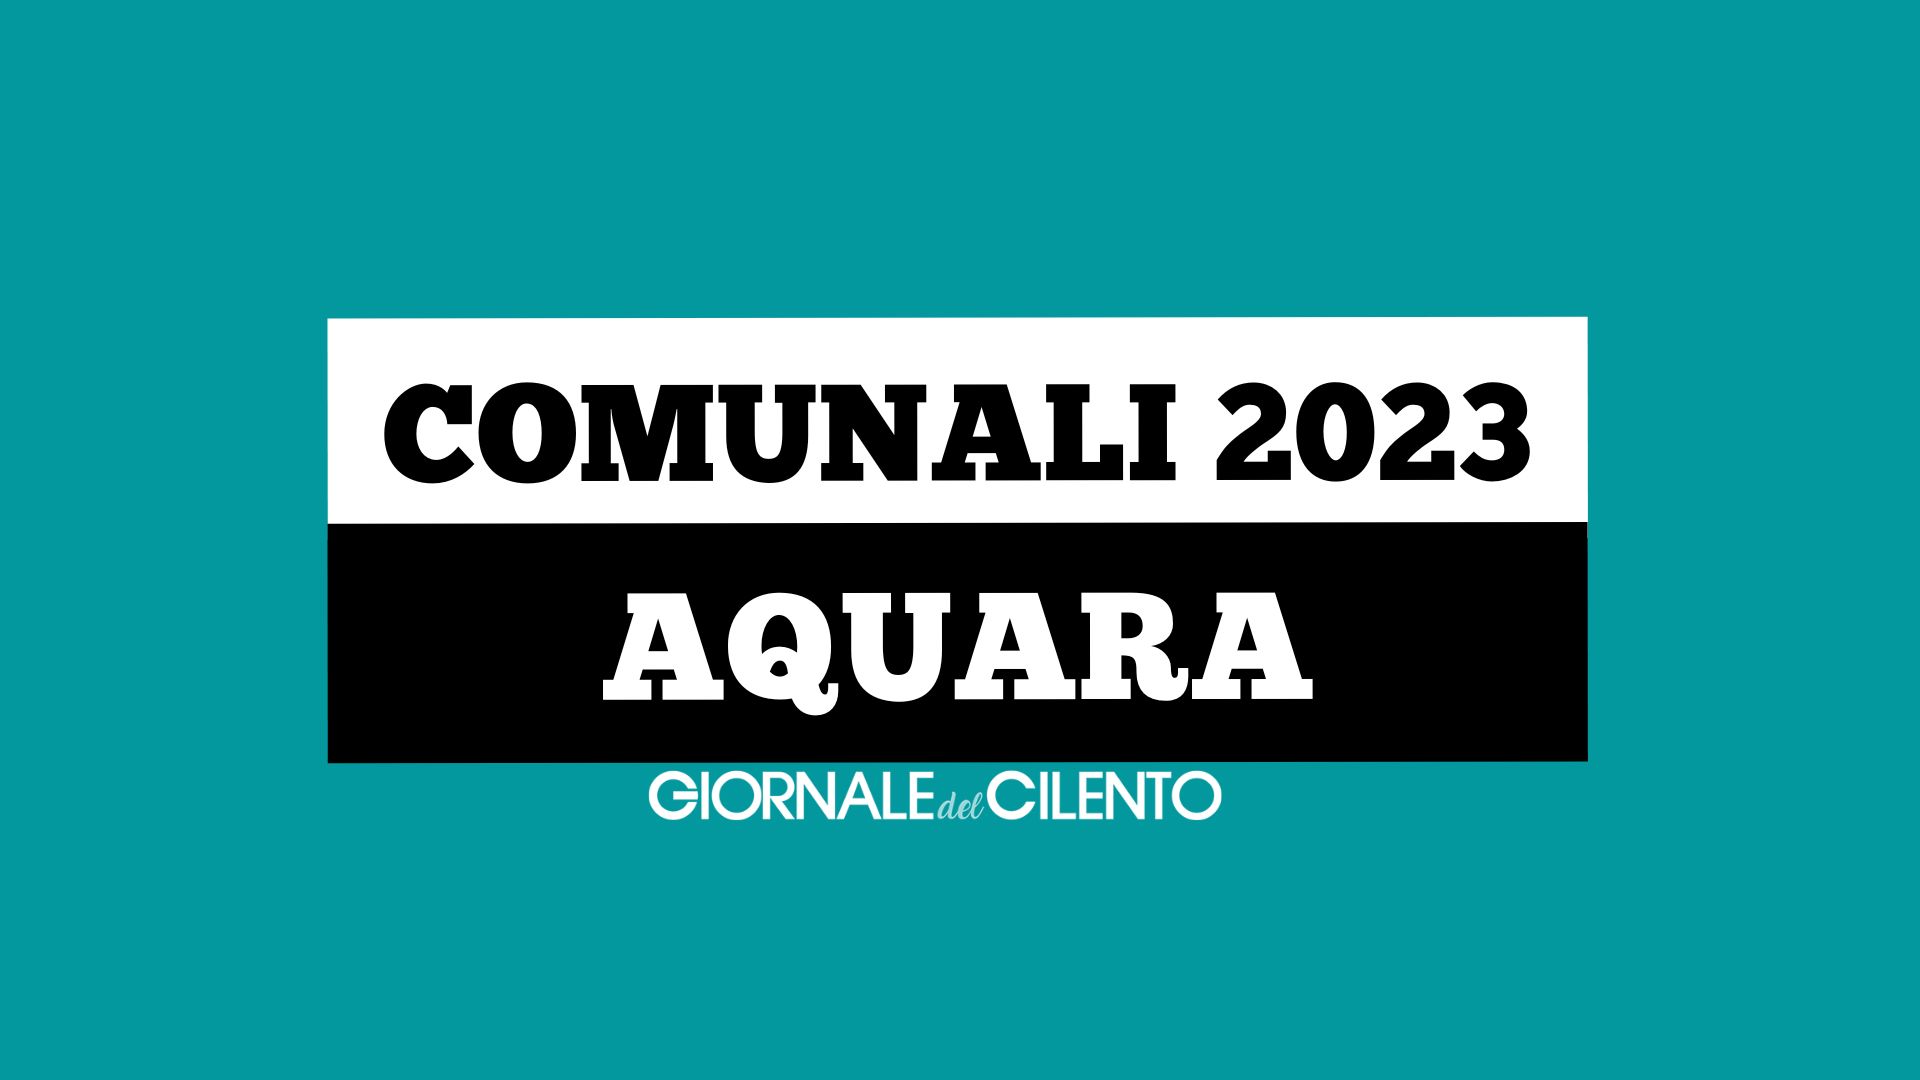 Elezioni comunali 2023, le liste e i candidati di Aquara